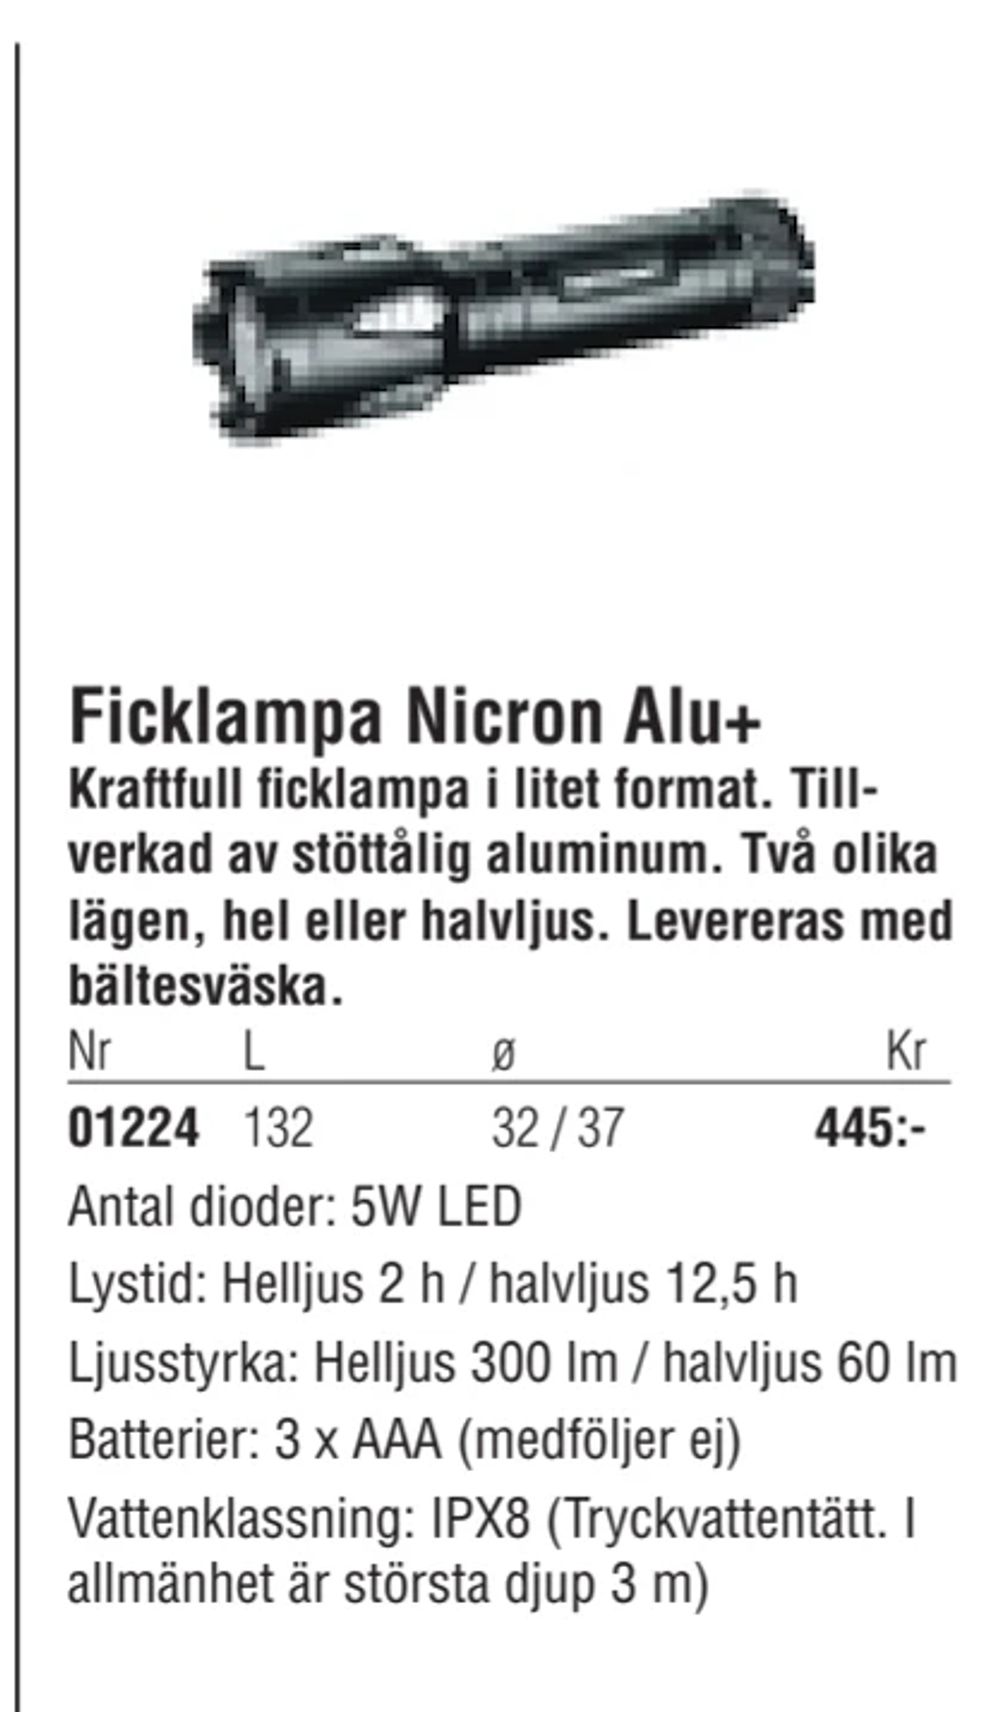 Erbjudanden på Ficklampa Nicron Alu+ från Erlandsons Brygga för 445 kr